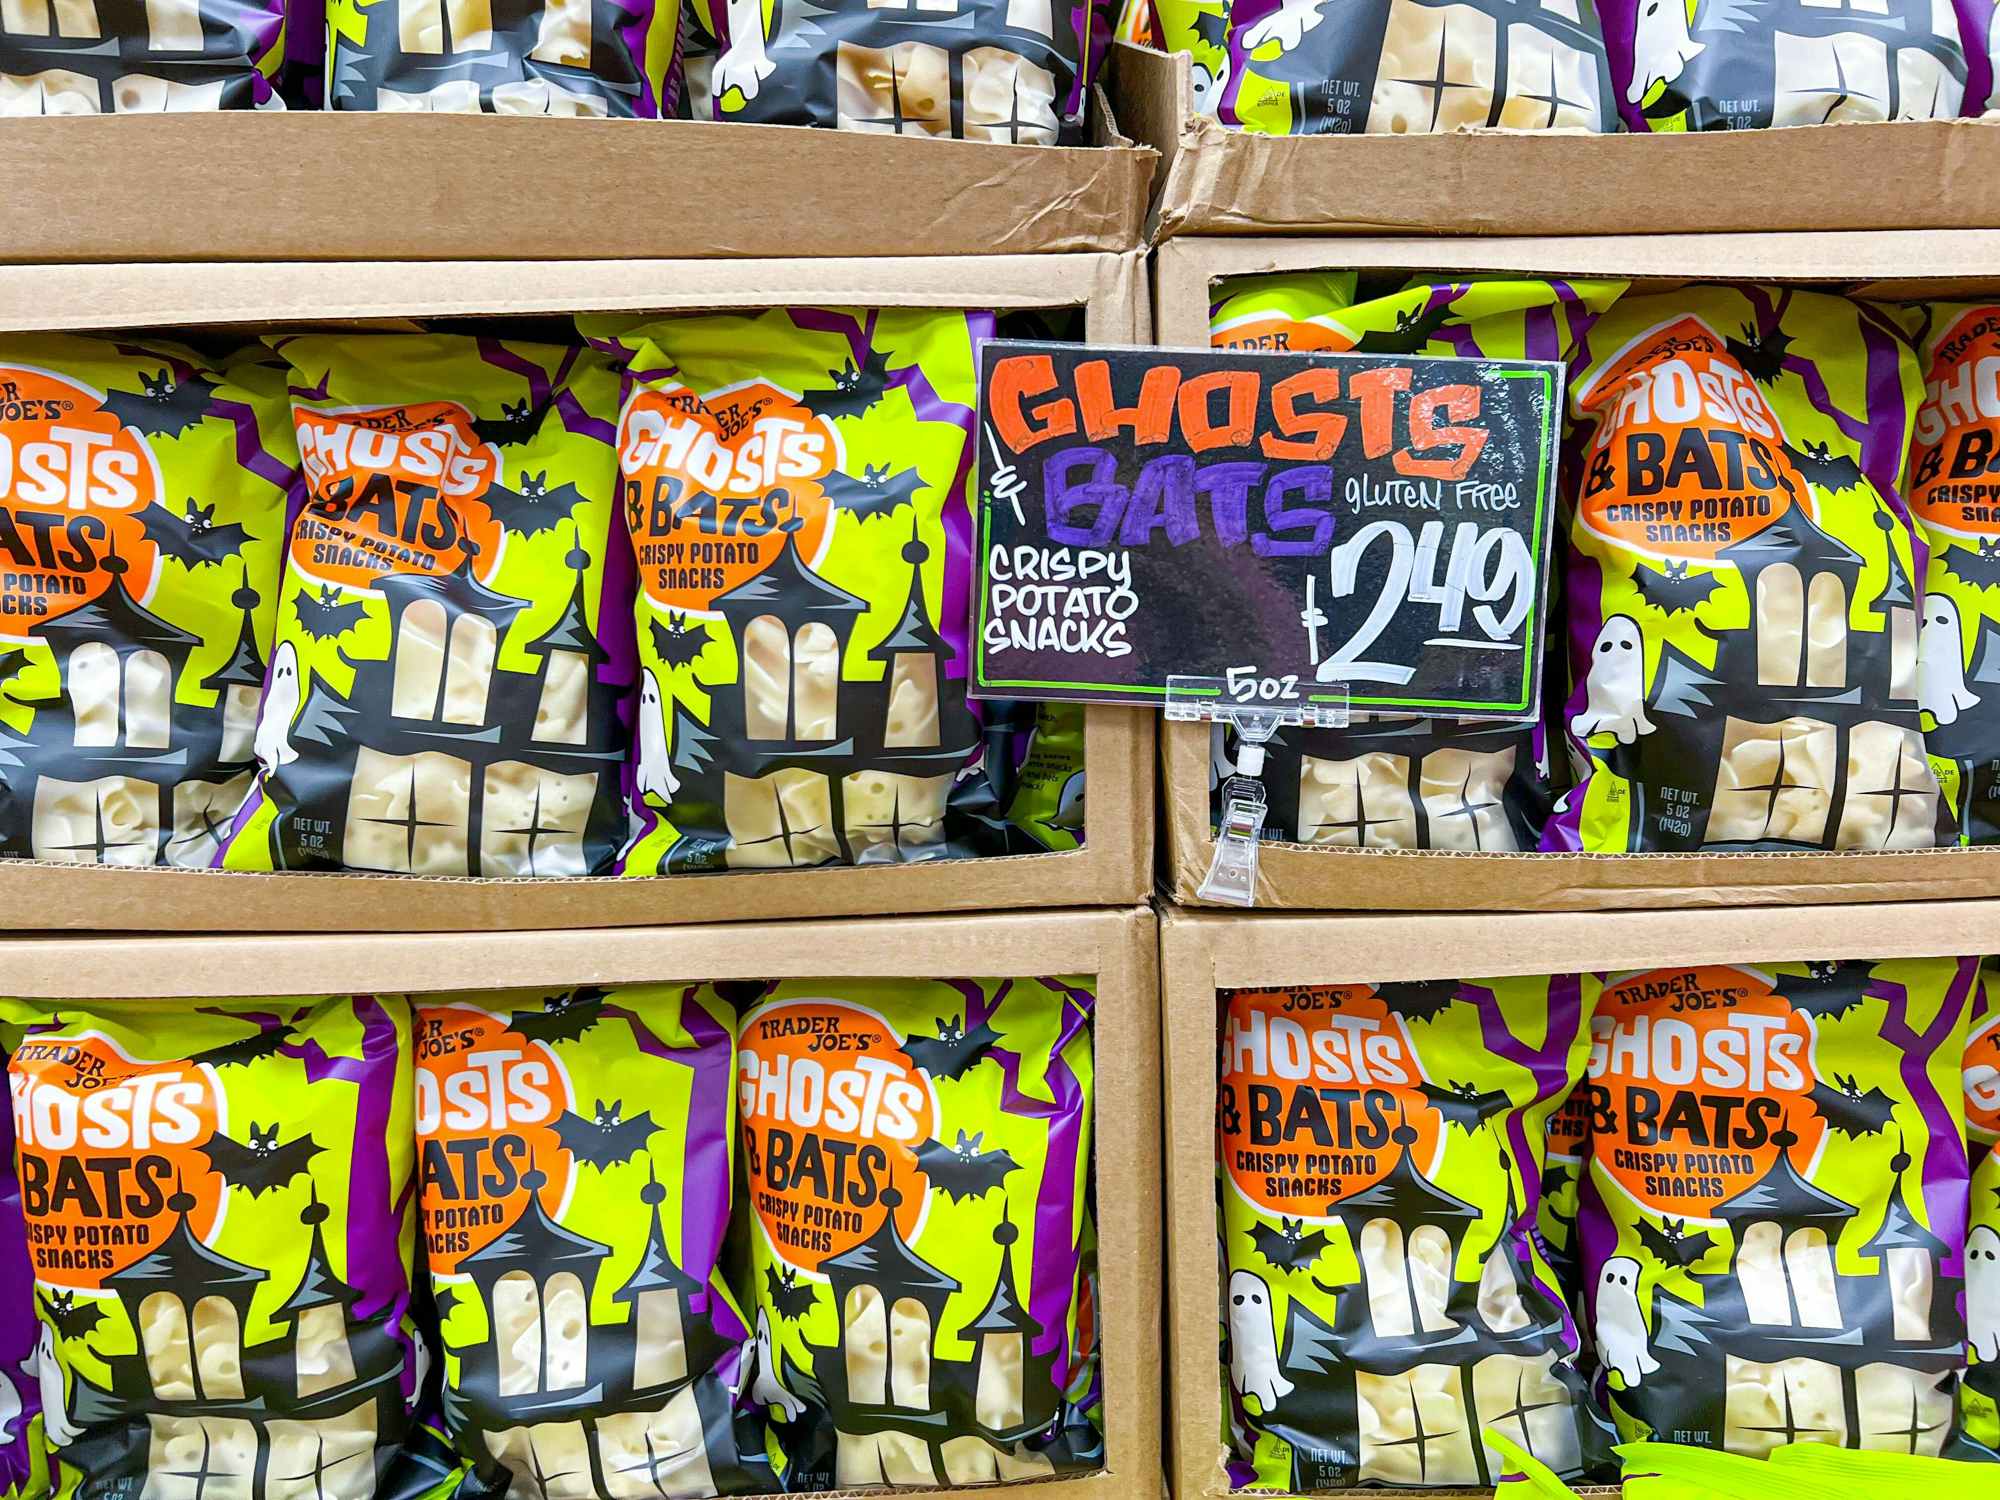 ghost and bats potato snacks at Trader Joe's